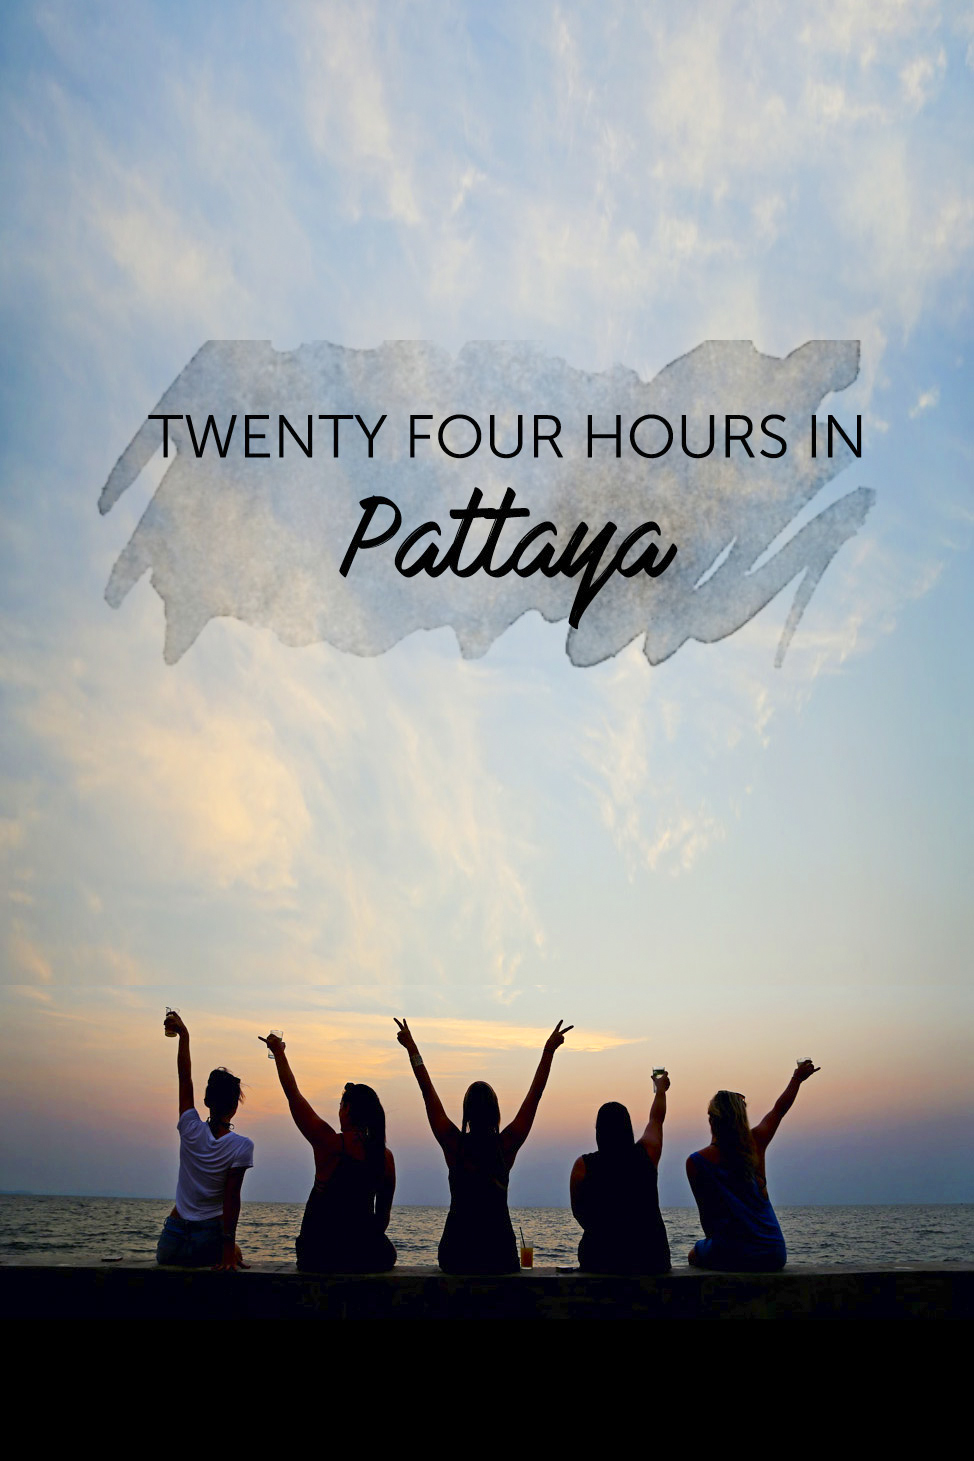 Twenty Four Hours in Pattaya